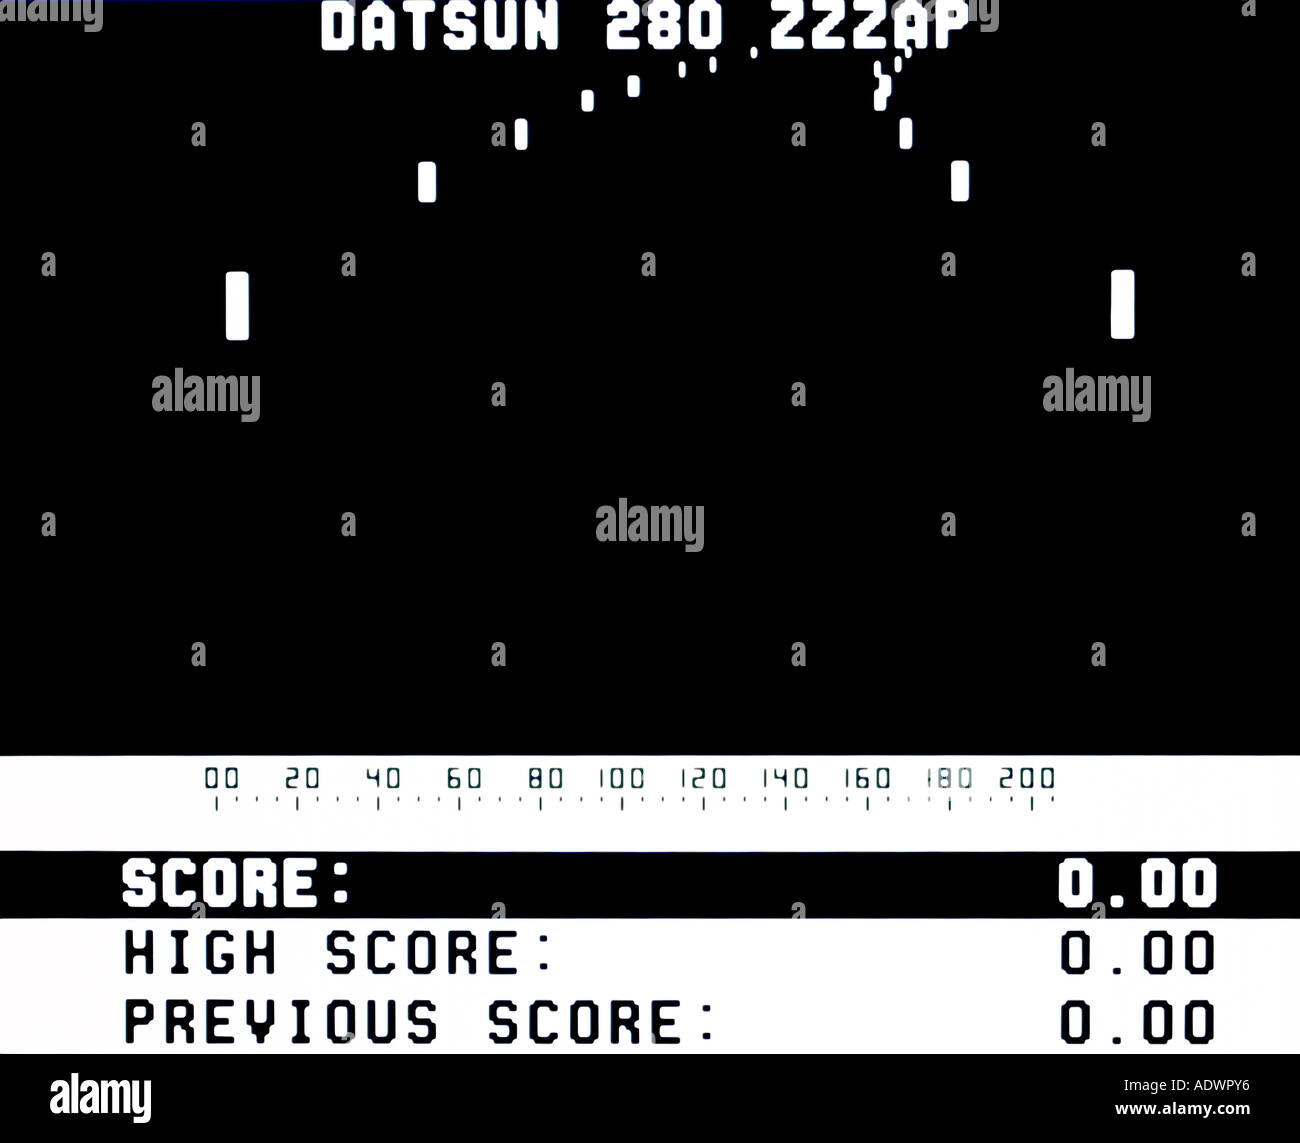 Datsun 280 Zzzap Midway 1976 vintage videogioco arcade screenshot - solo uso editoriale Foto Stock